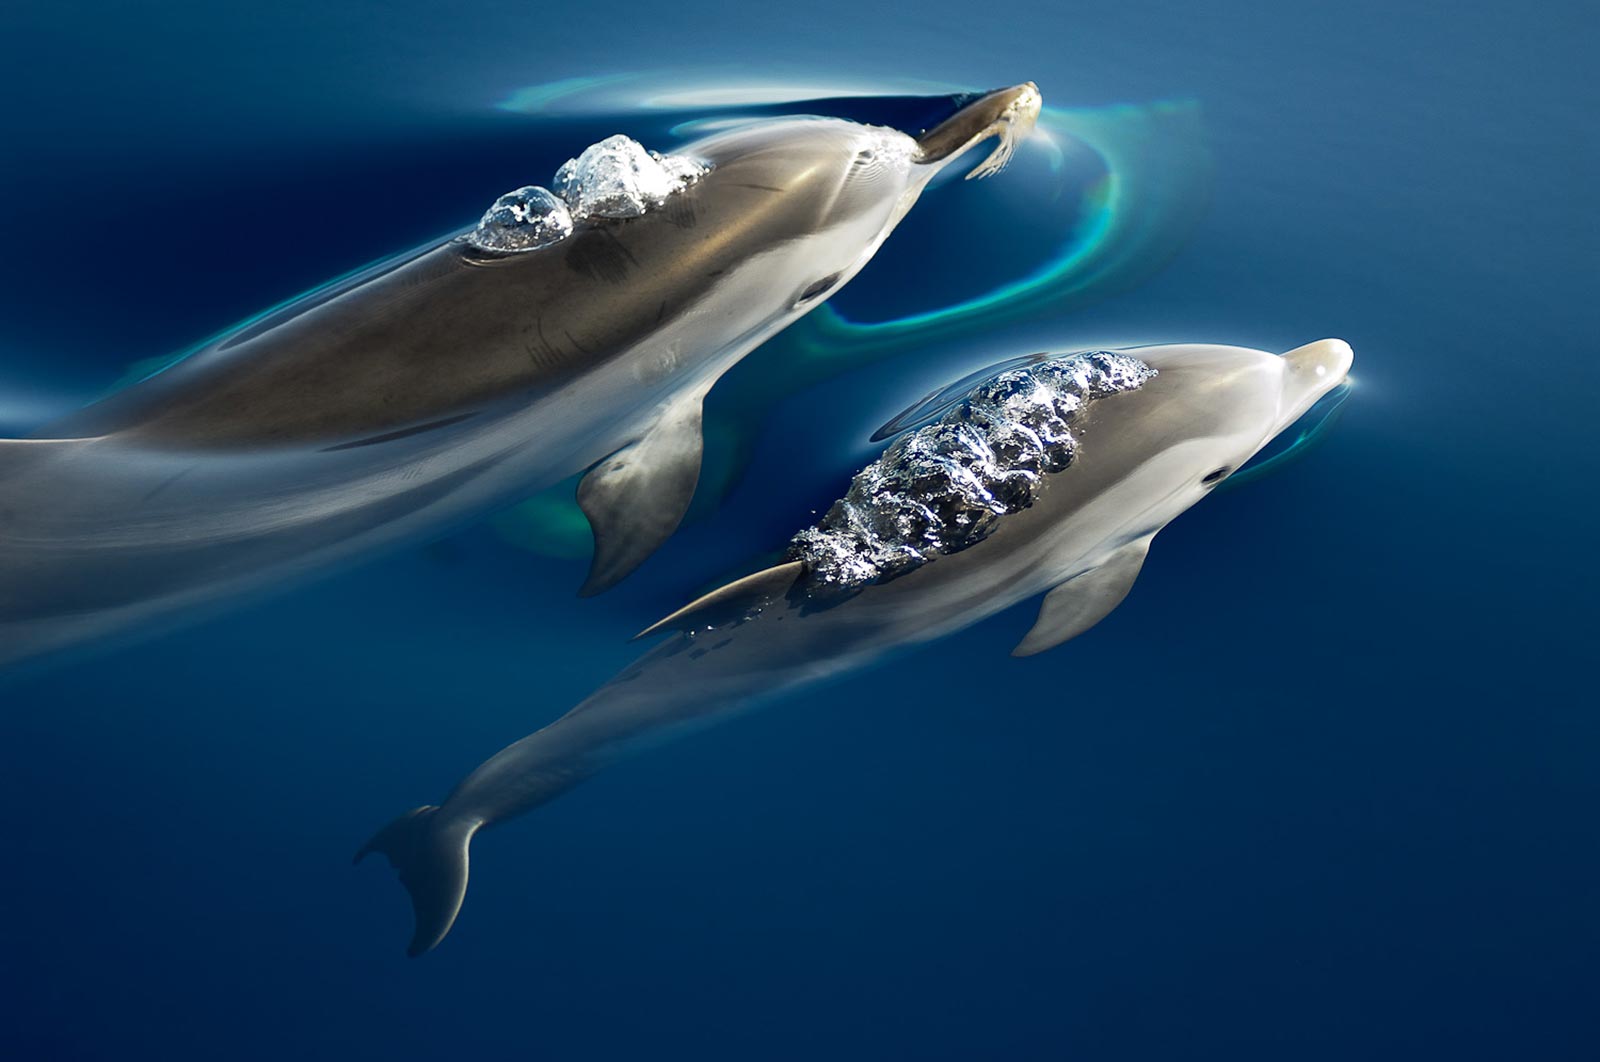 Οι θανατώσεις ζωνοδέλφινων στο ΒΑ Αιγαίο συνεχίζονται